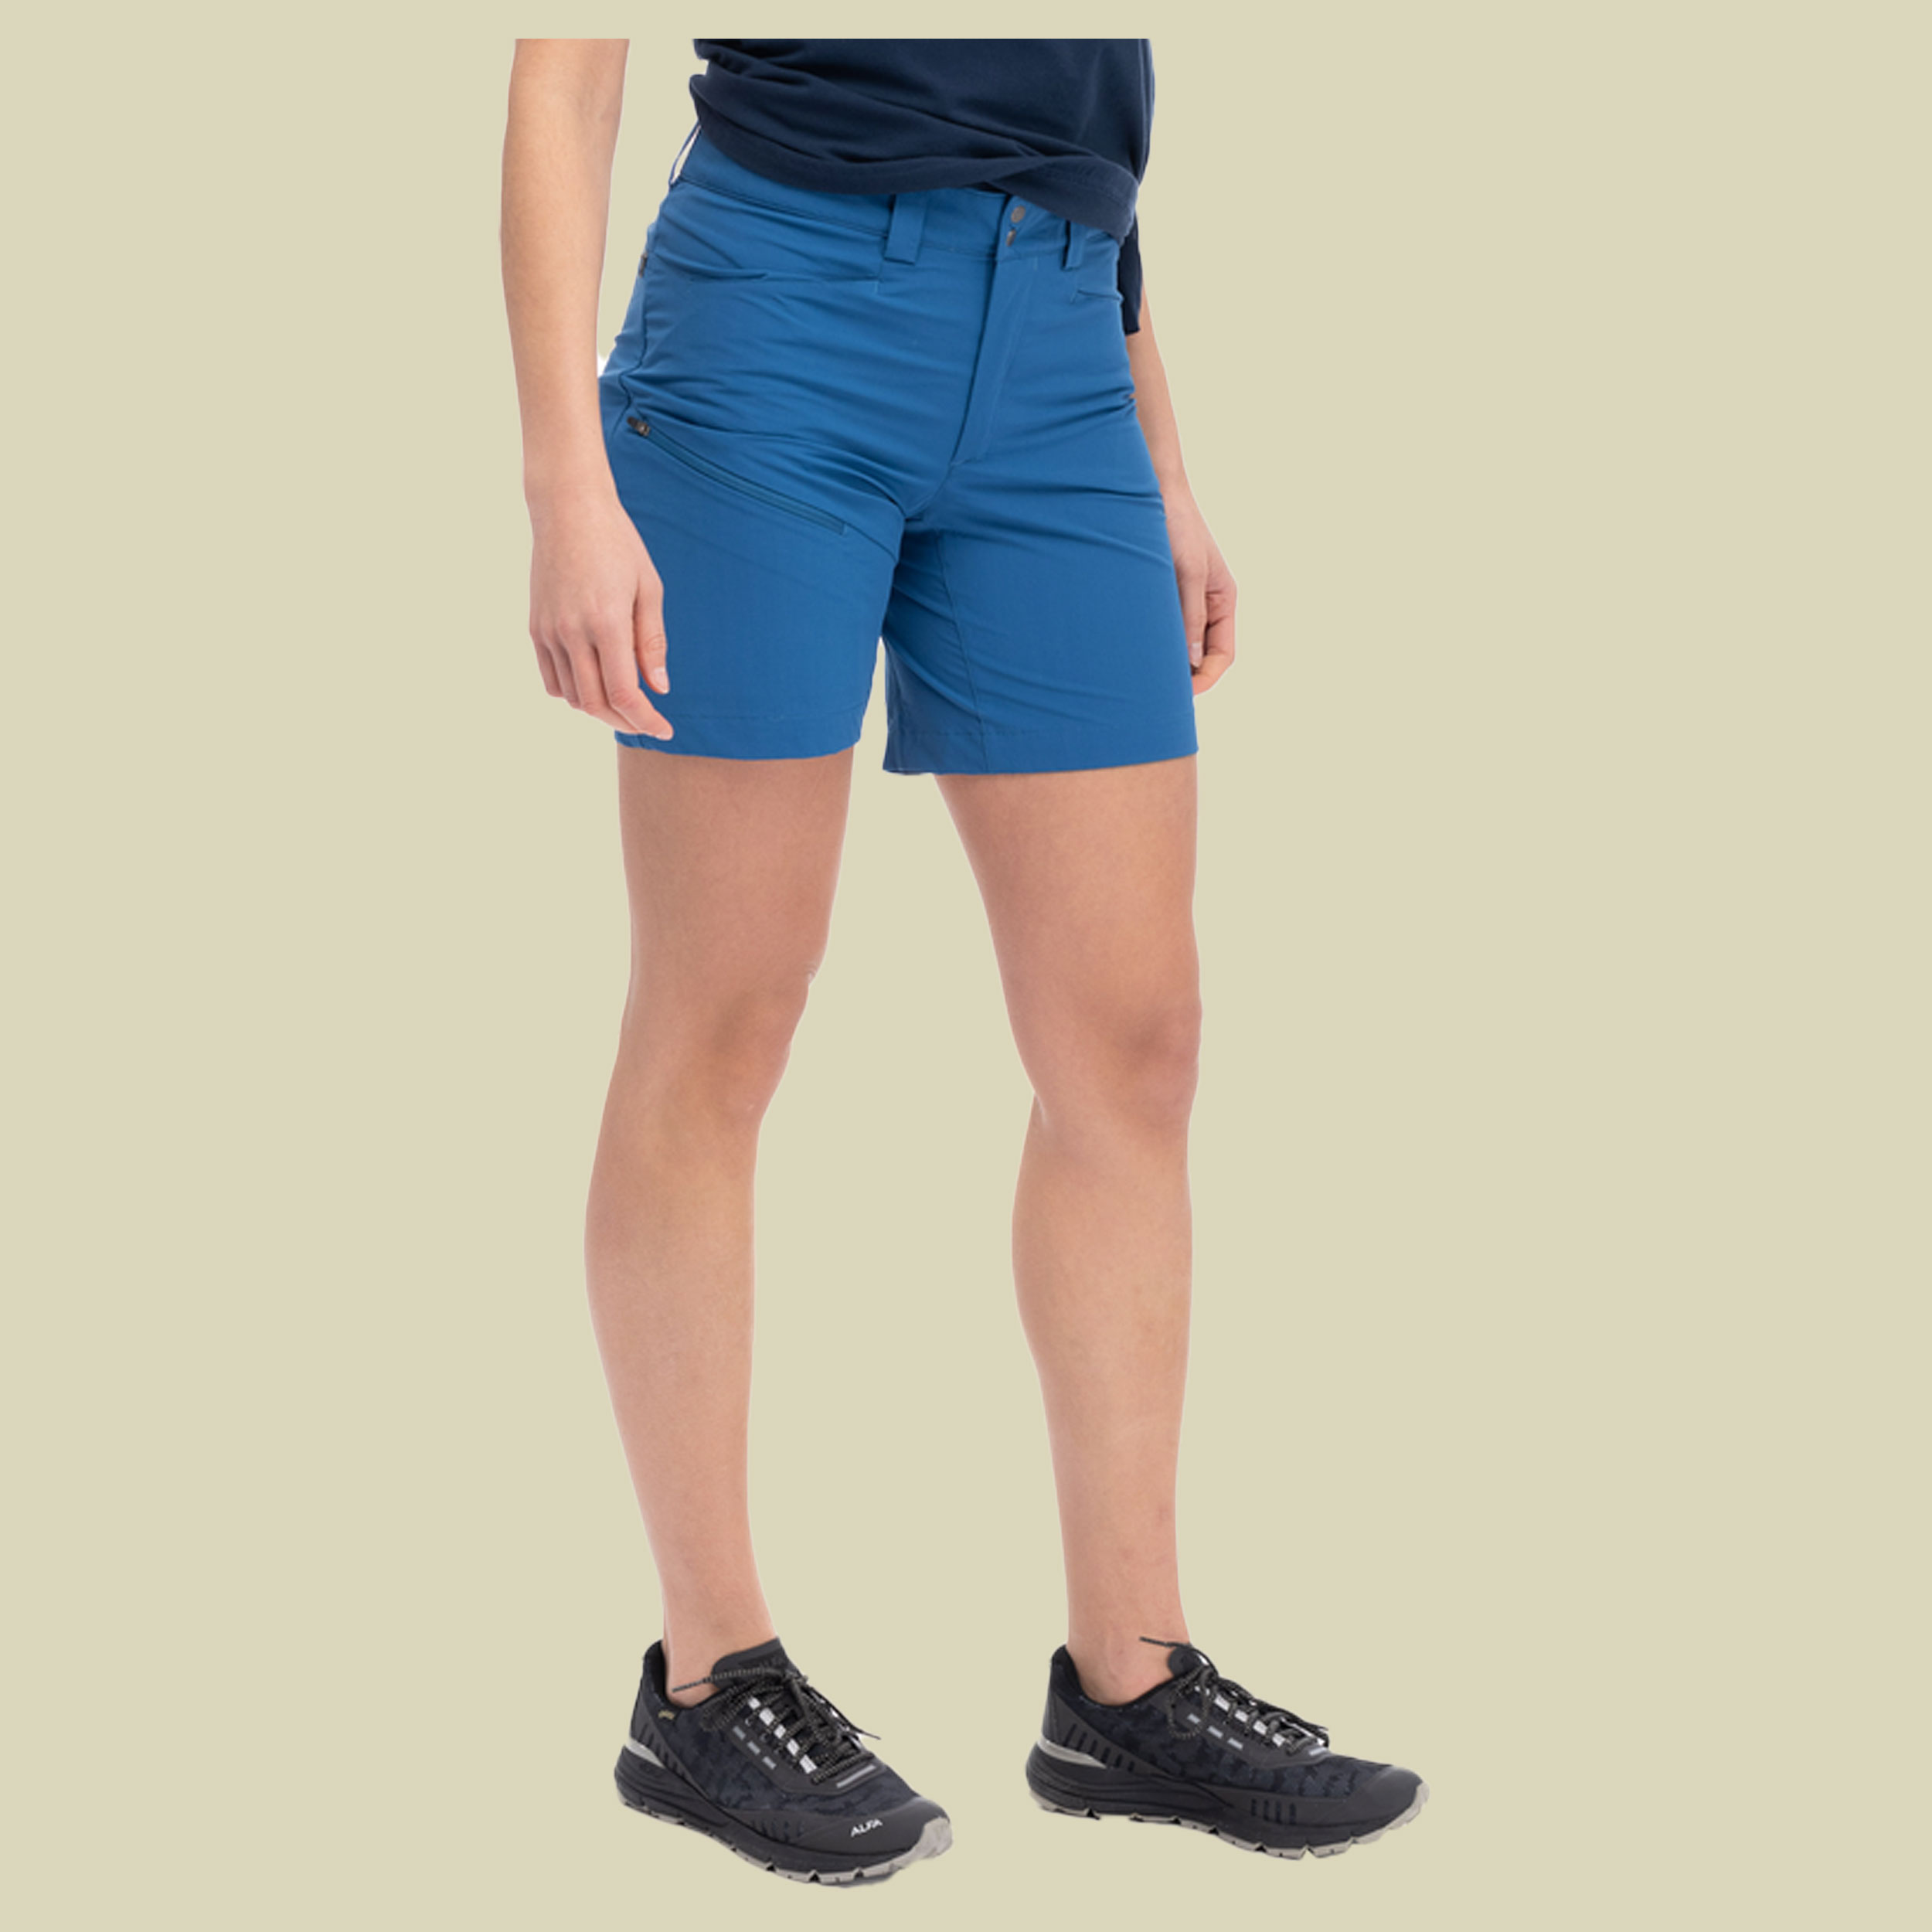 Vandre Light Softshell Shorts Women Größe 40 Farbe north sea blue